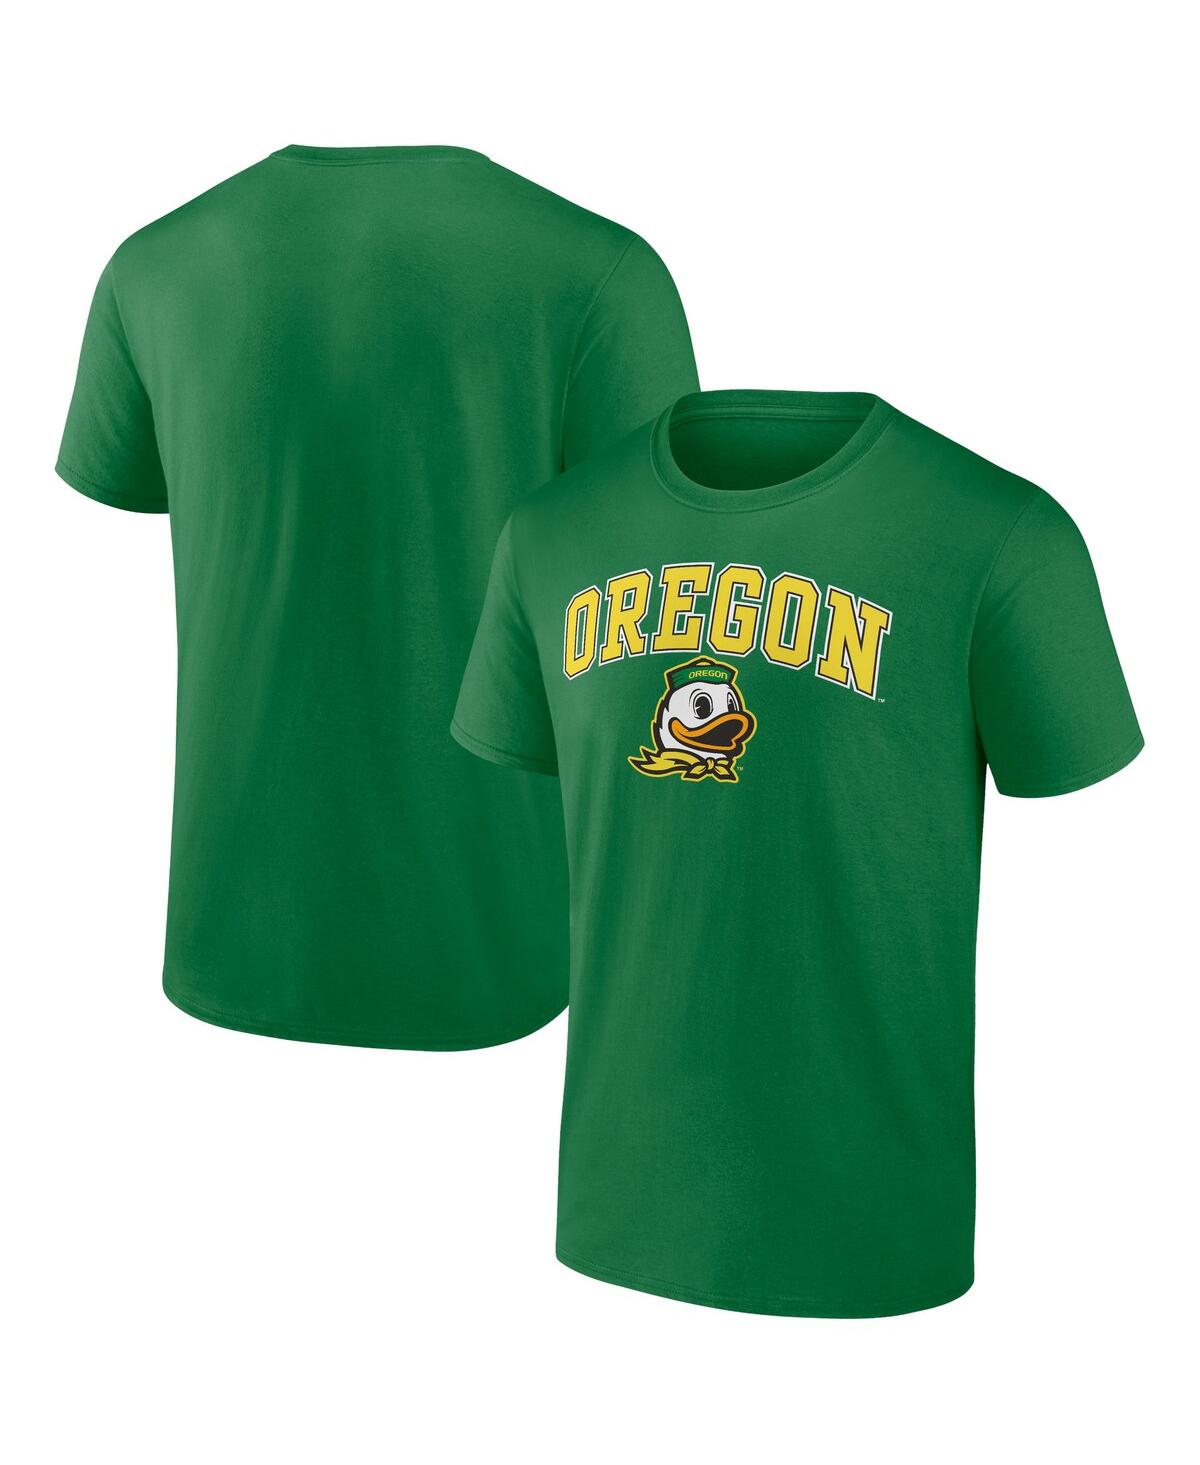 Fanatics Men's  Green Oregon Ducks Campus T-shirt